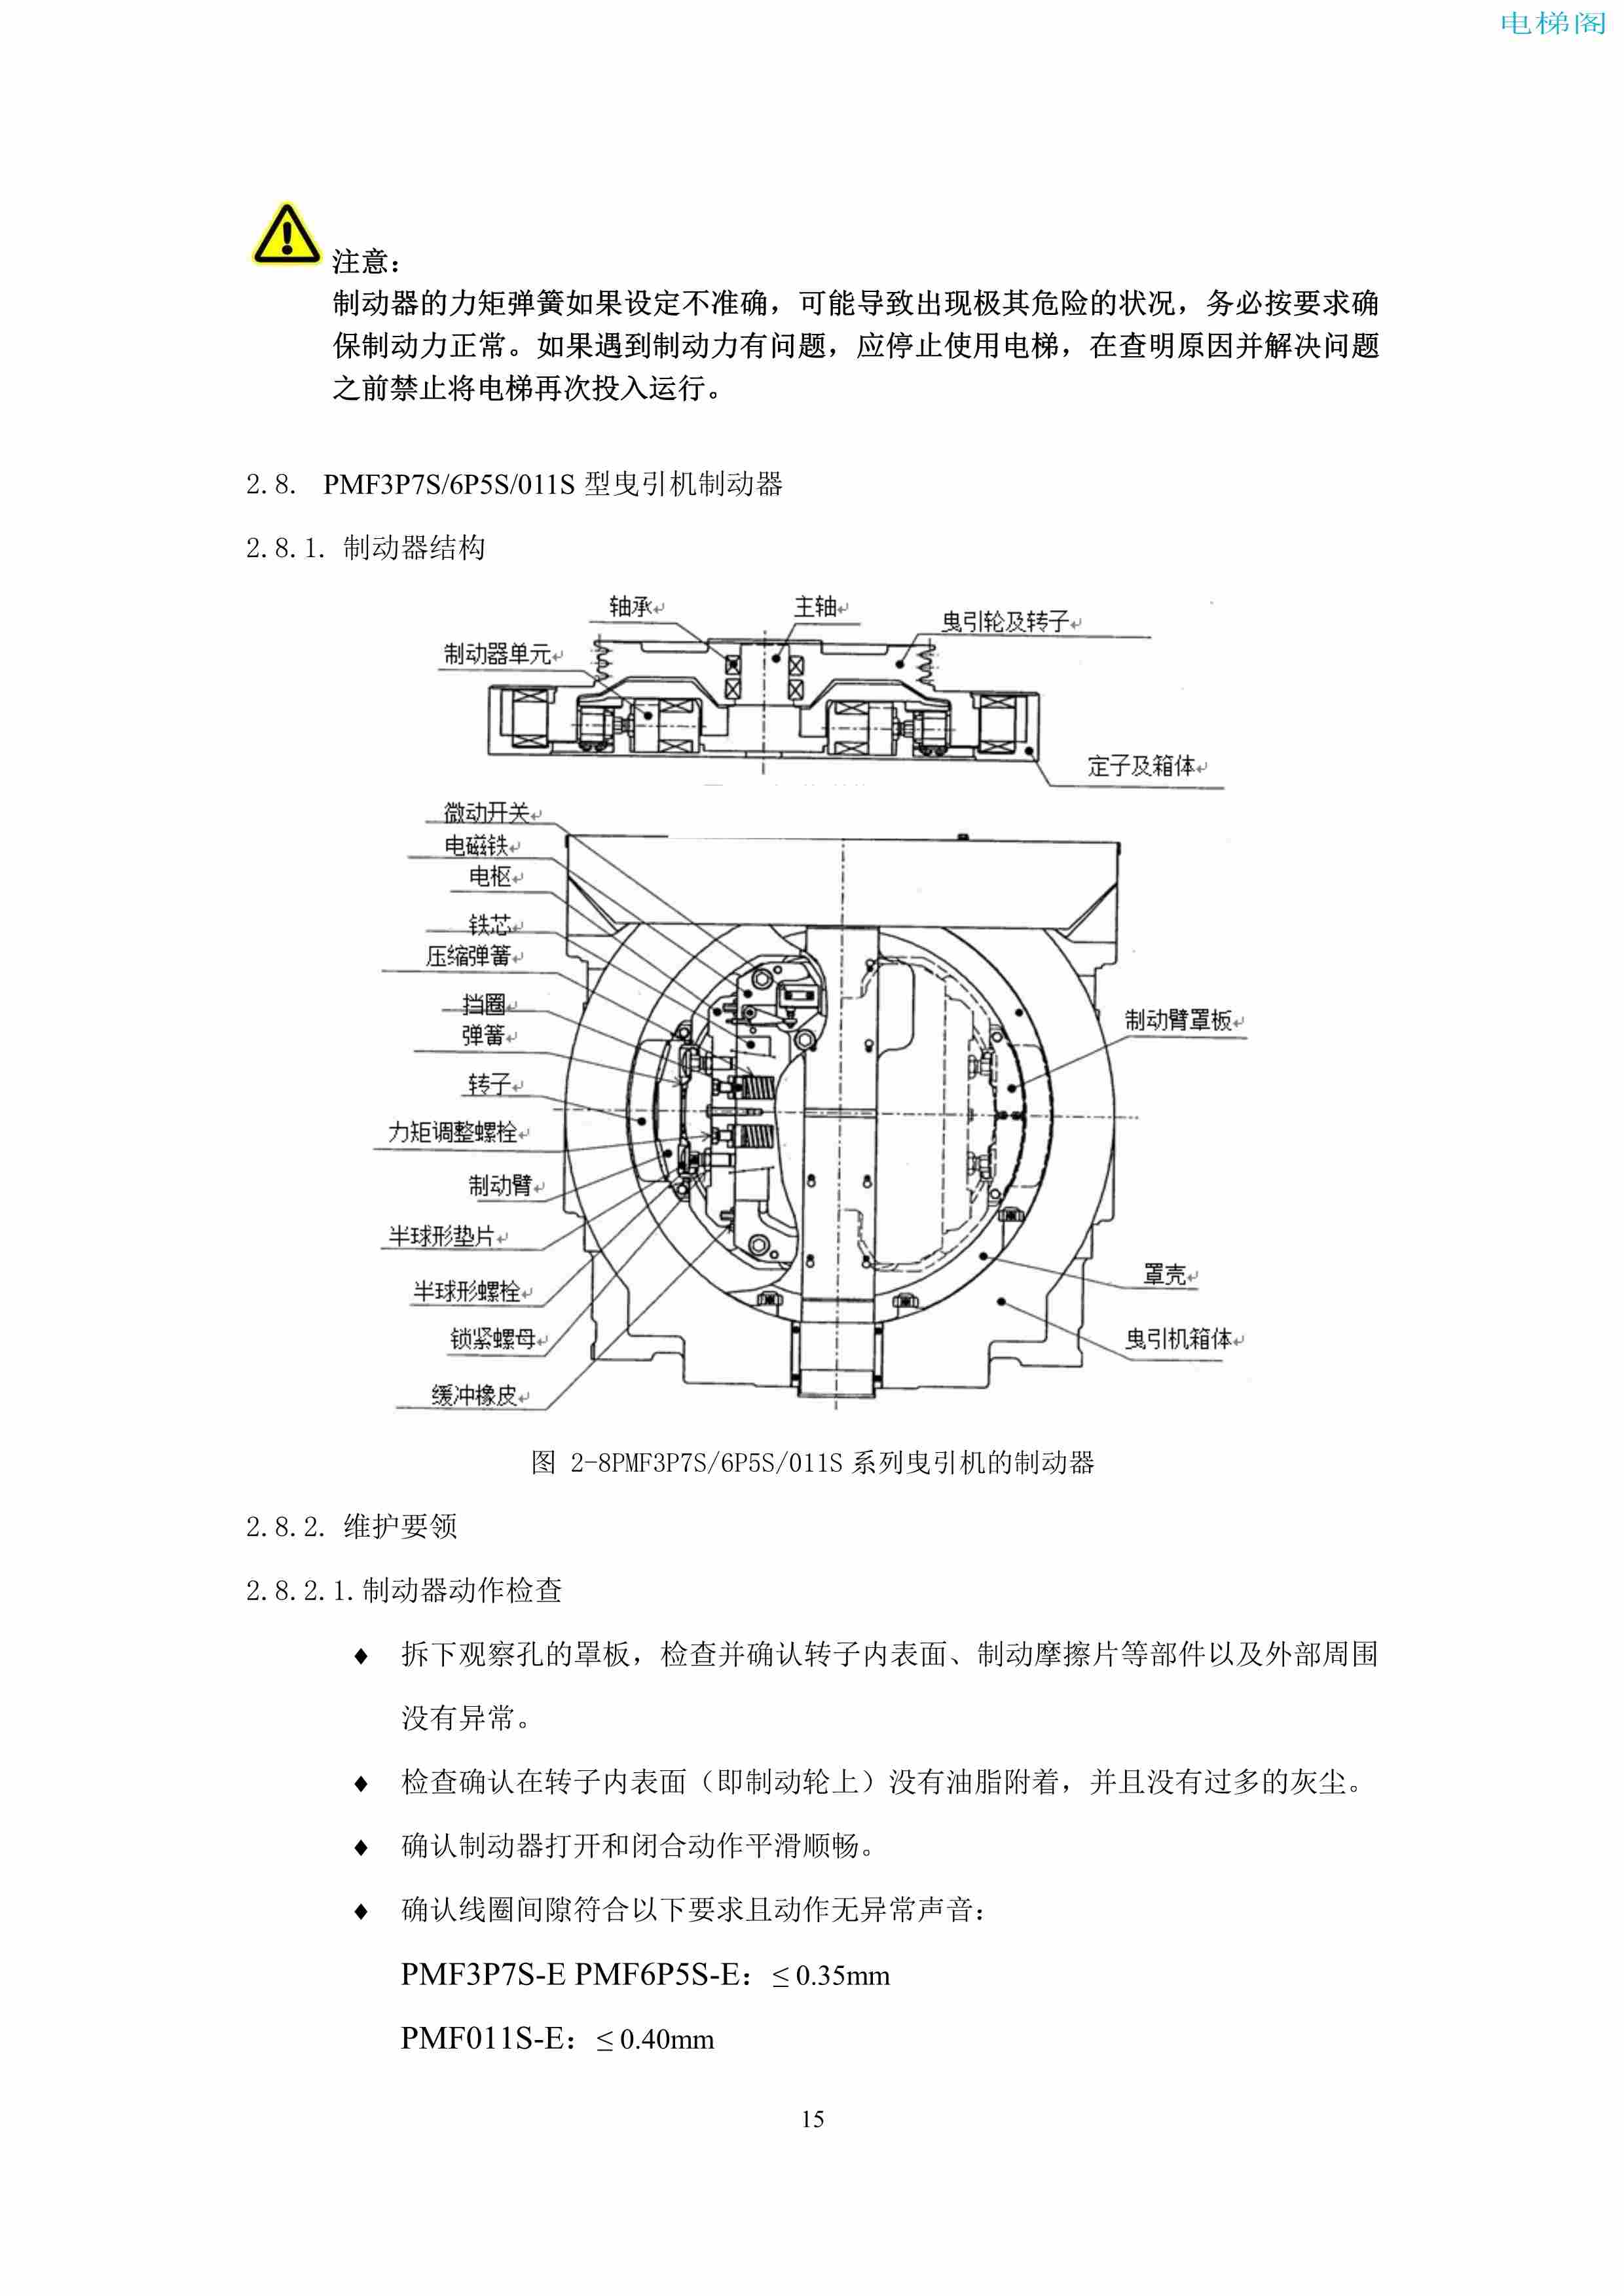 上海三菱电梯有限公司电梯制动器维护作业要领汇编_17.jpg